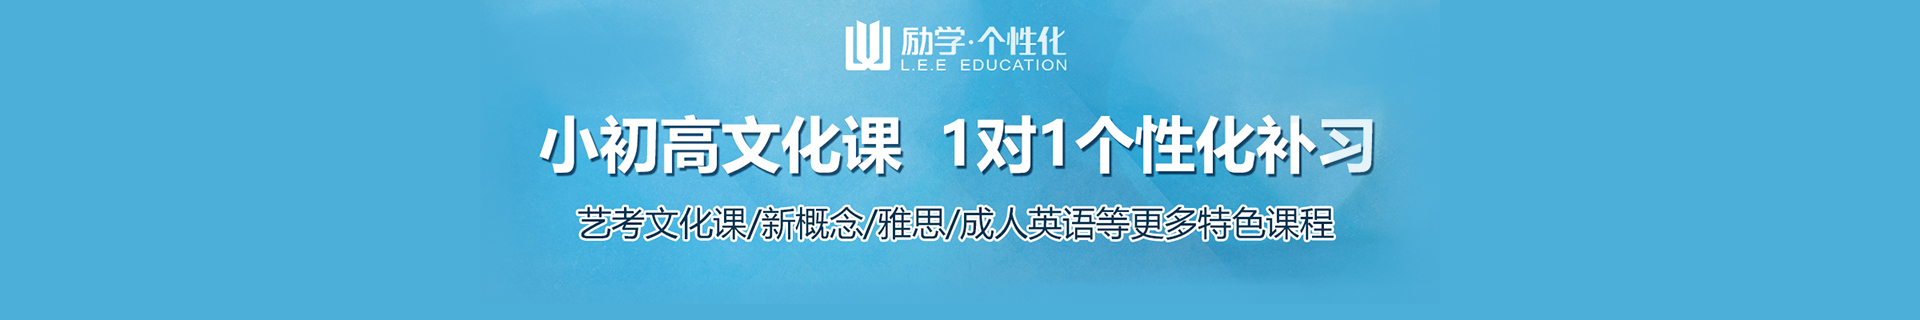 郑州中原区励学个性化教育机构